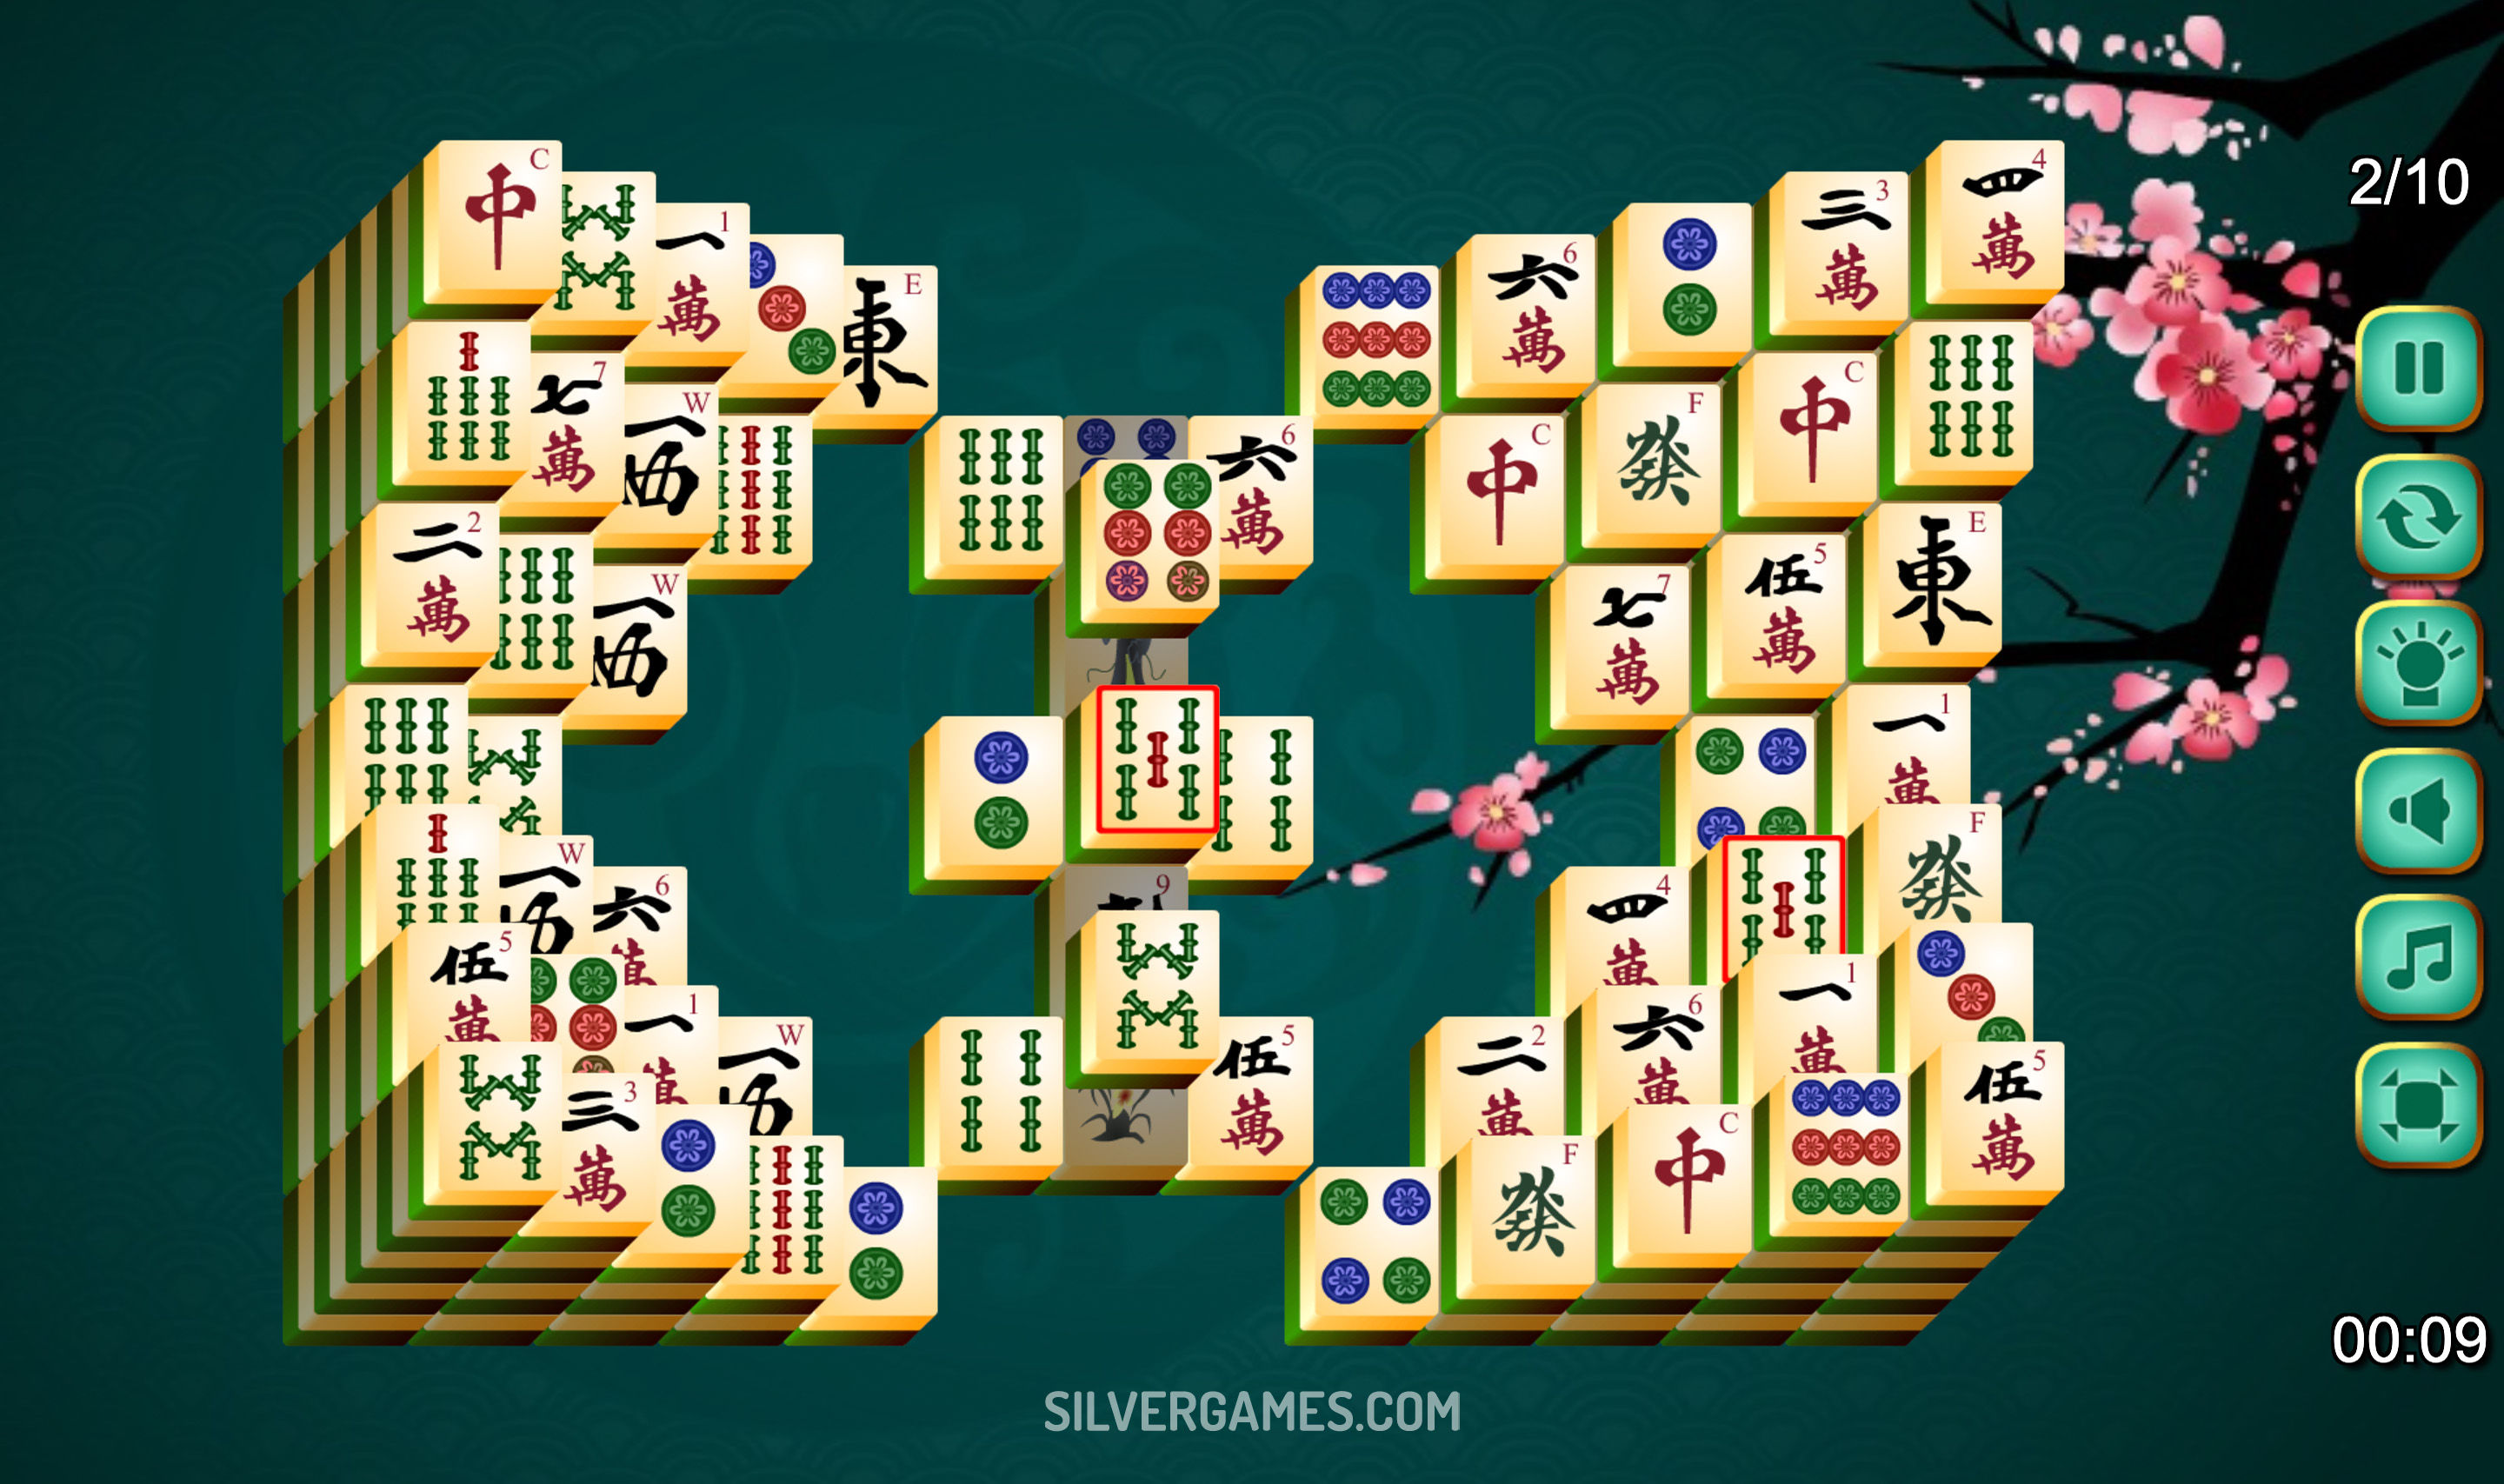 Mahjong 3D — juega en línea gratis